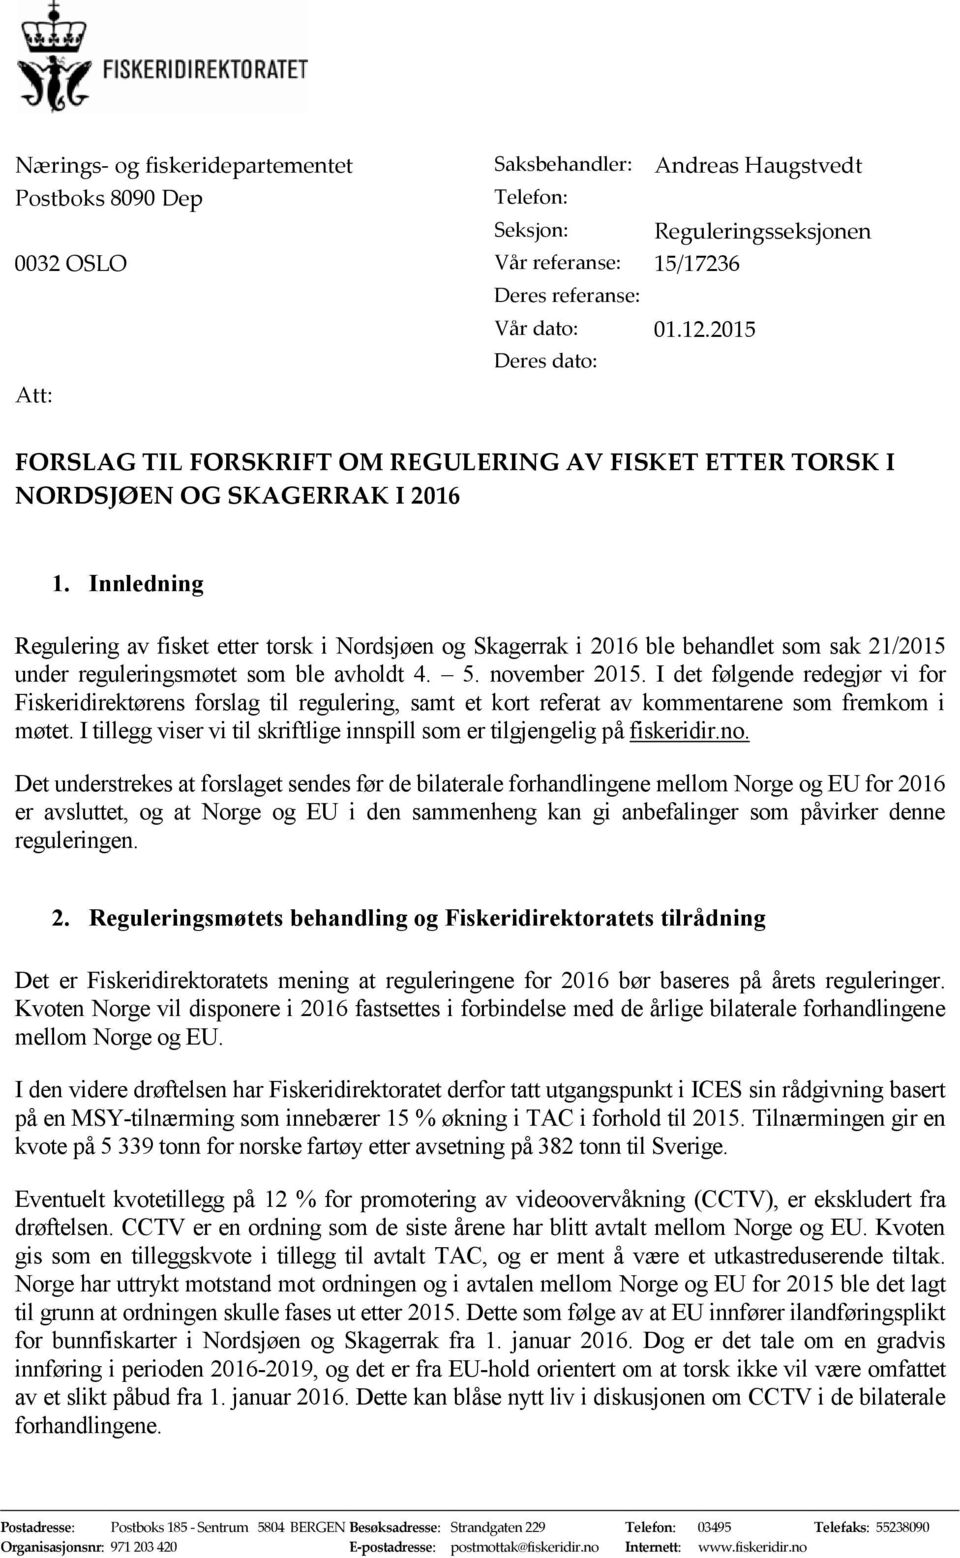 Innledning Regulering av fisket etter torsk i Nordsjøen og Skagerrak i 2016 ble behandlet som sak 21/2015 under reguleringsmøtet som ble avholdt 4. 5. november 2015.